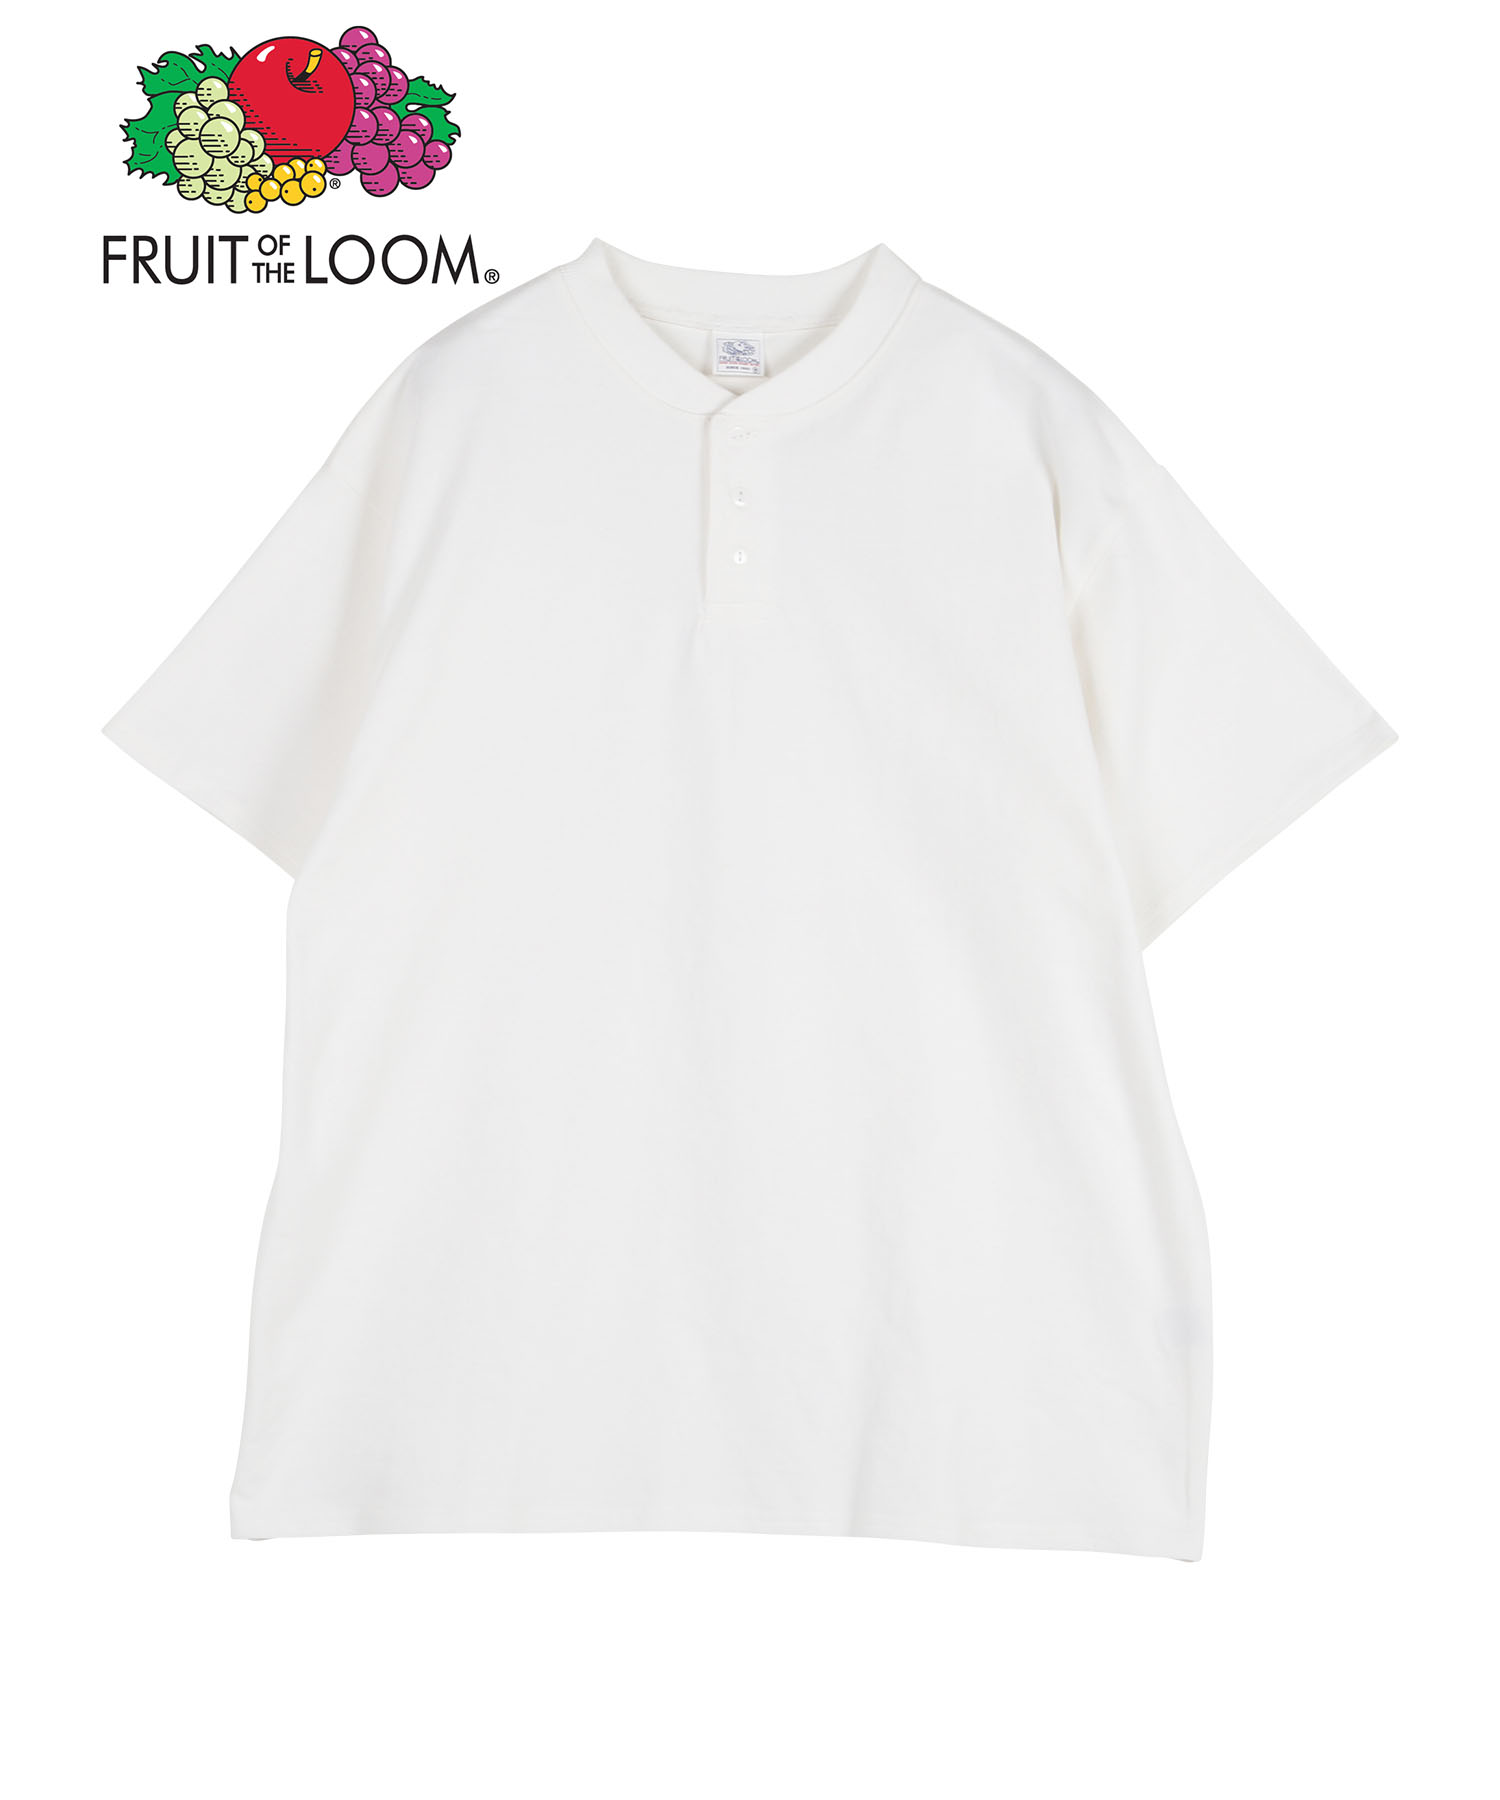 フルーツオブザルーム Tシャツ メンズ FRUIT OF THE LOOM インナー 紳士 男女兼用...